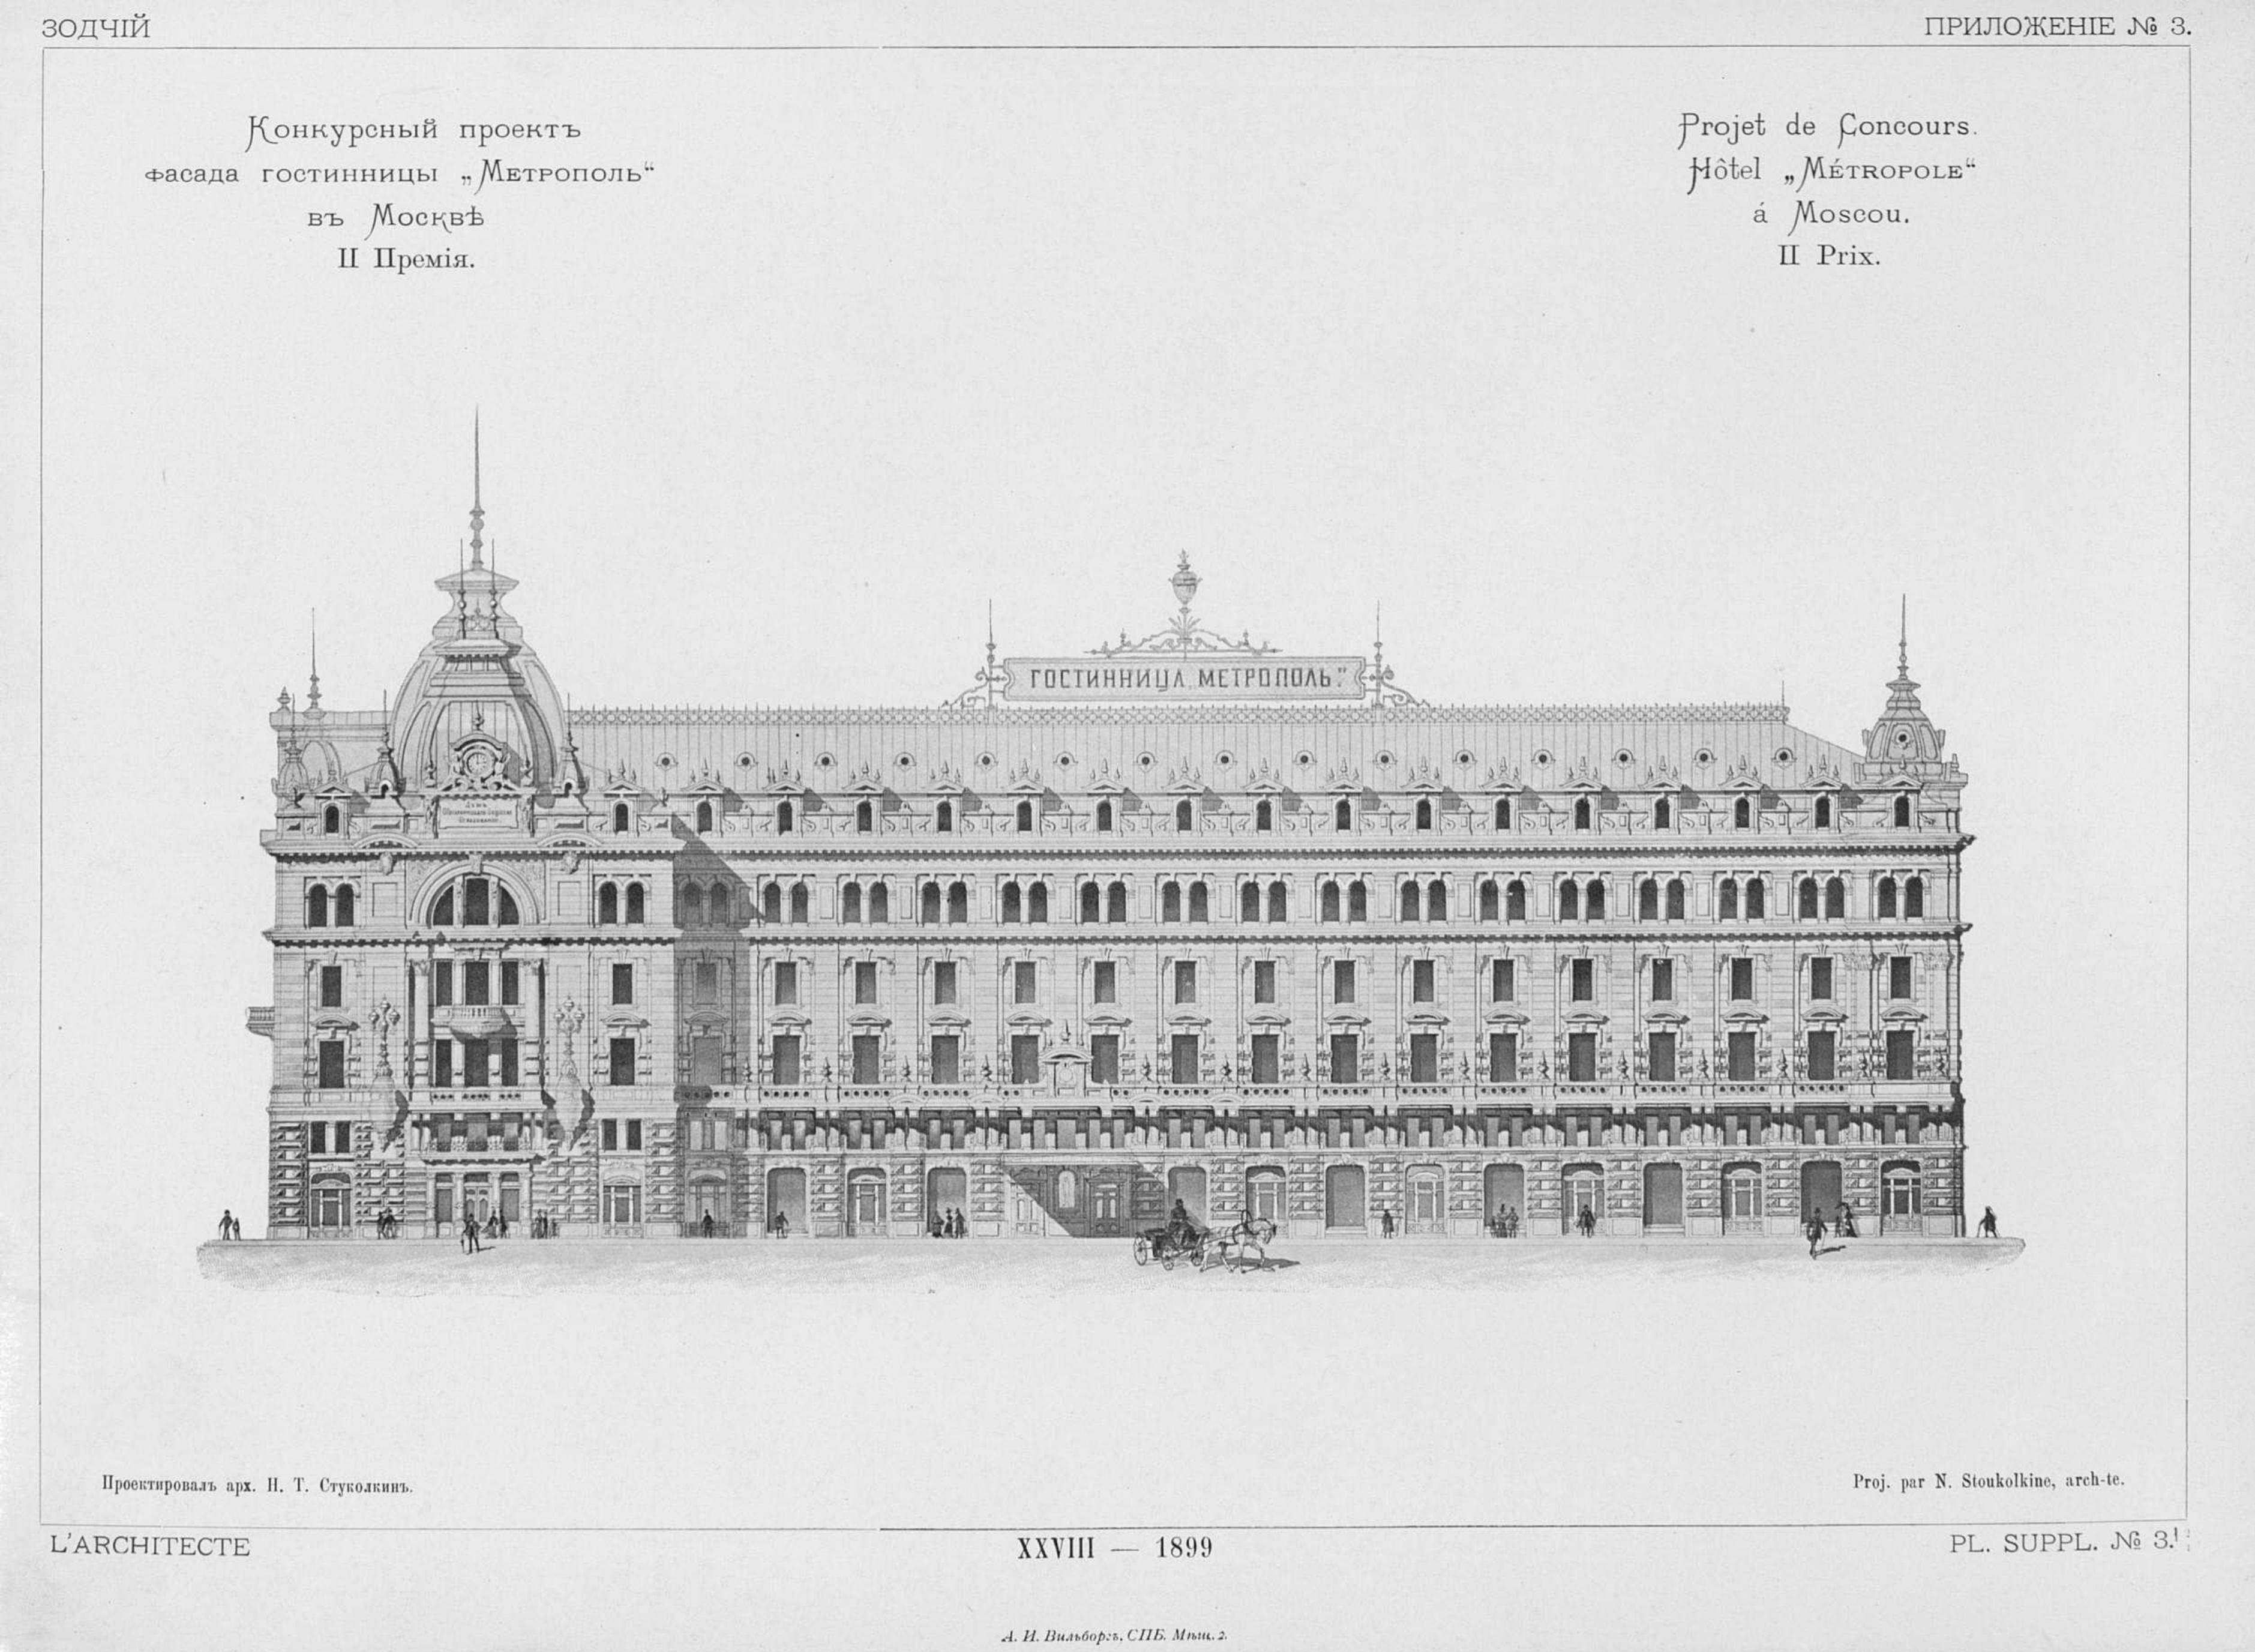 Конкурс на фасад гостиницы «Метрополь» (1899). 2-я премия. Проект архитектора H. Т. Стуколкина